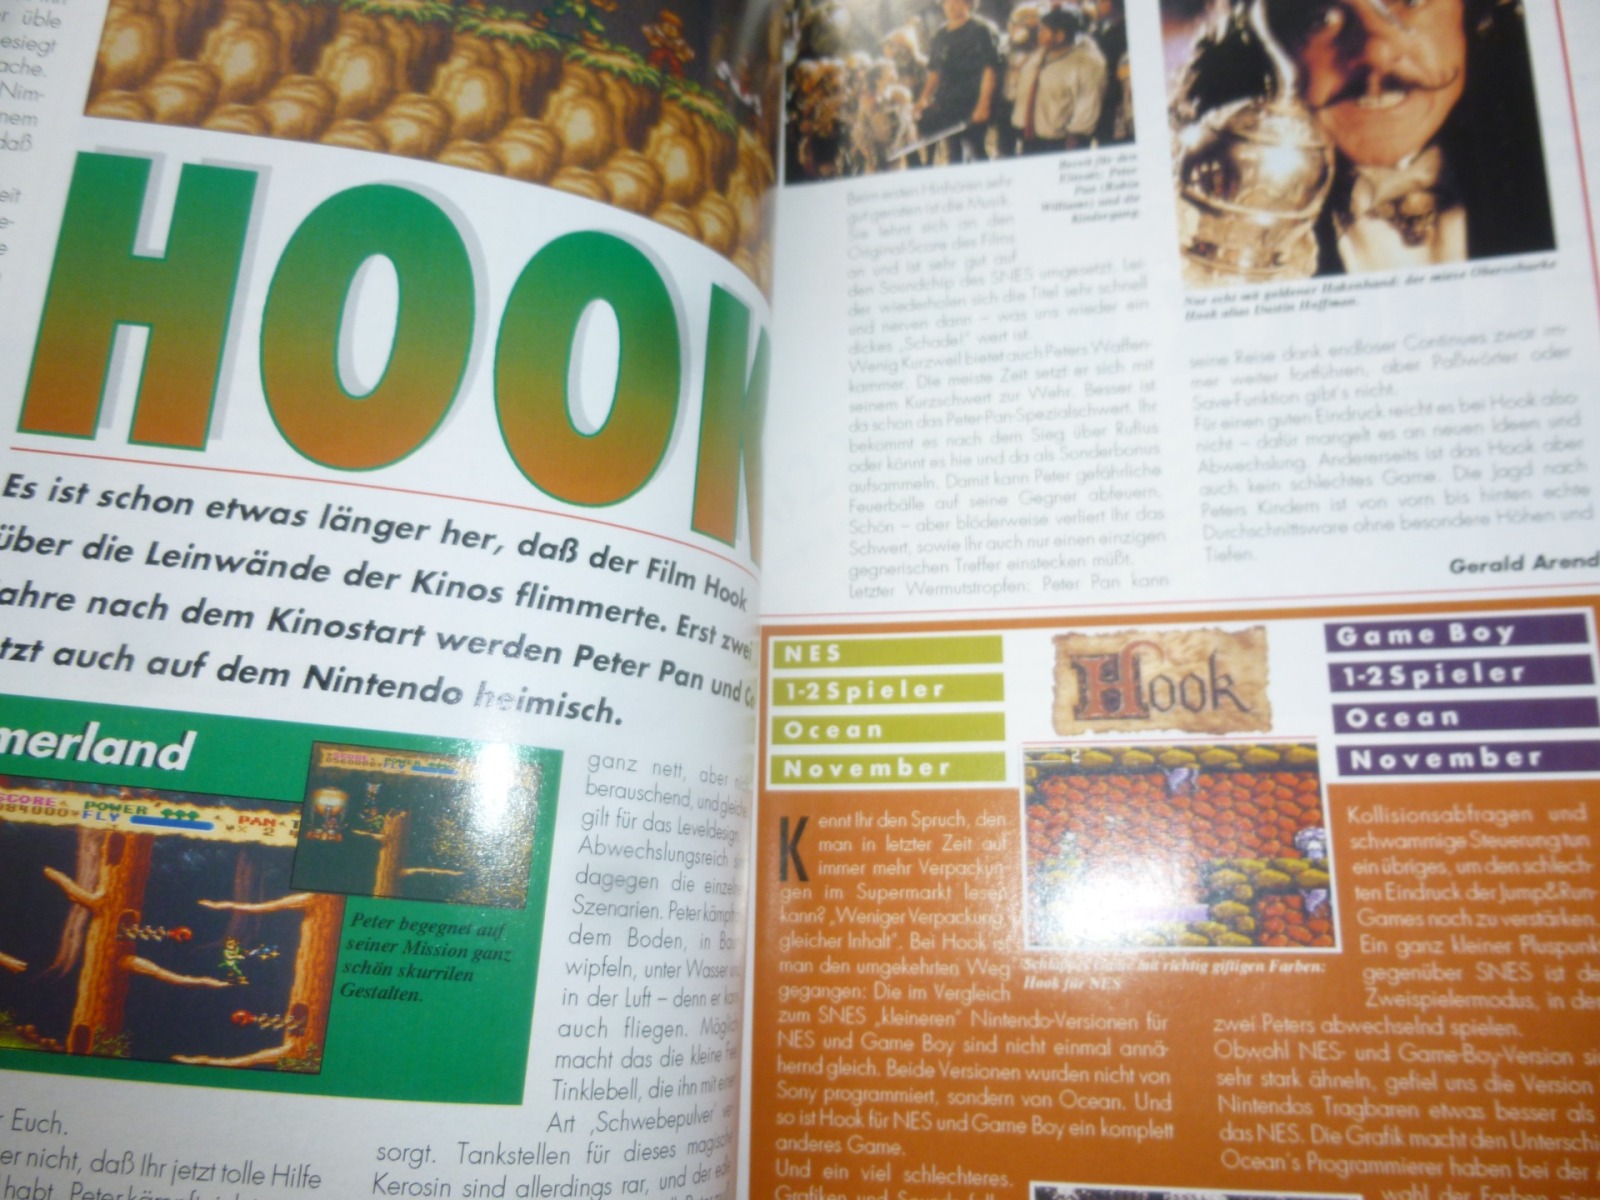 TOTAL Das unabhängige Magazin - 100% Nintendo - Ausgabe 10/93 1993 13